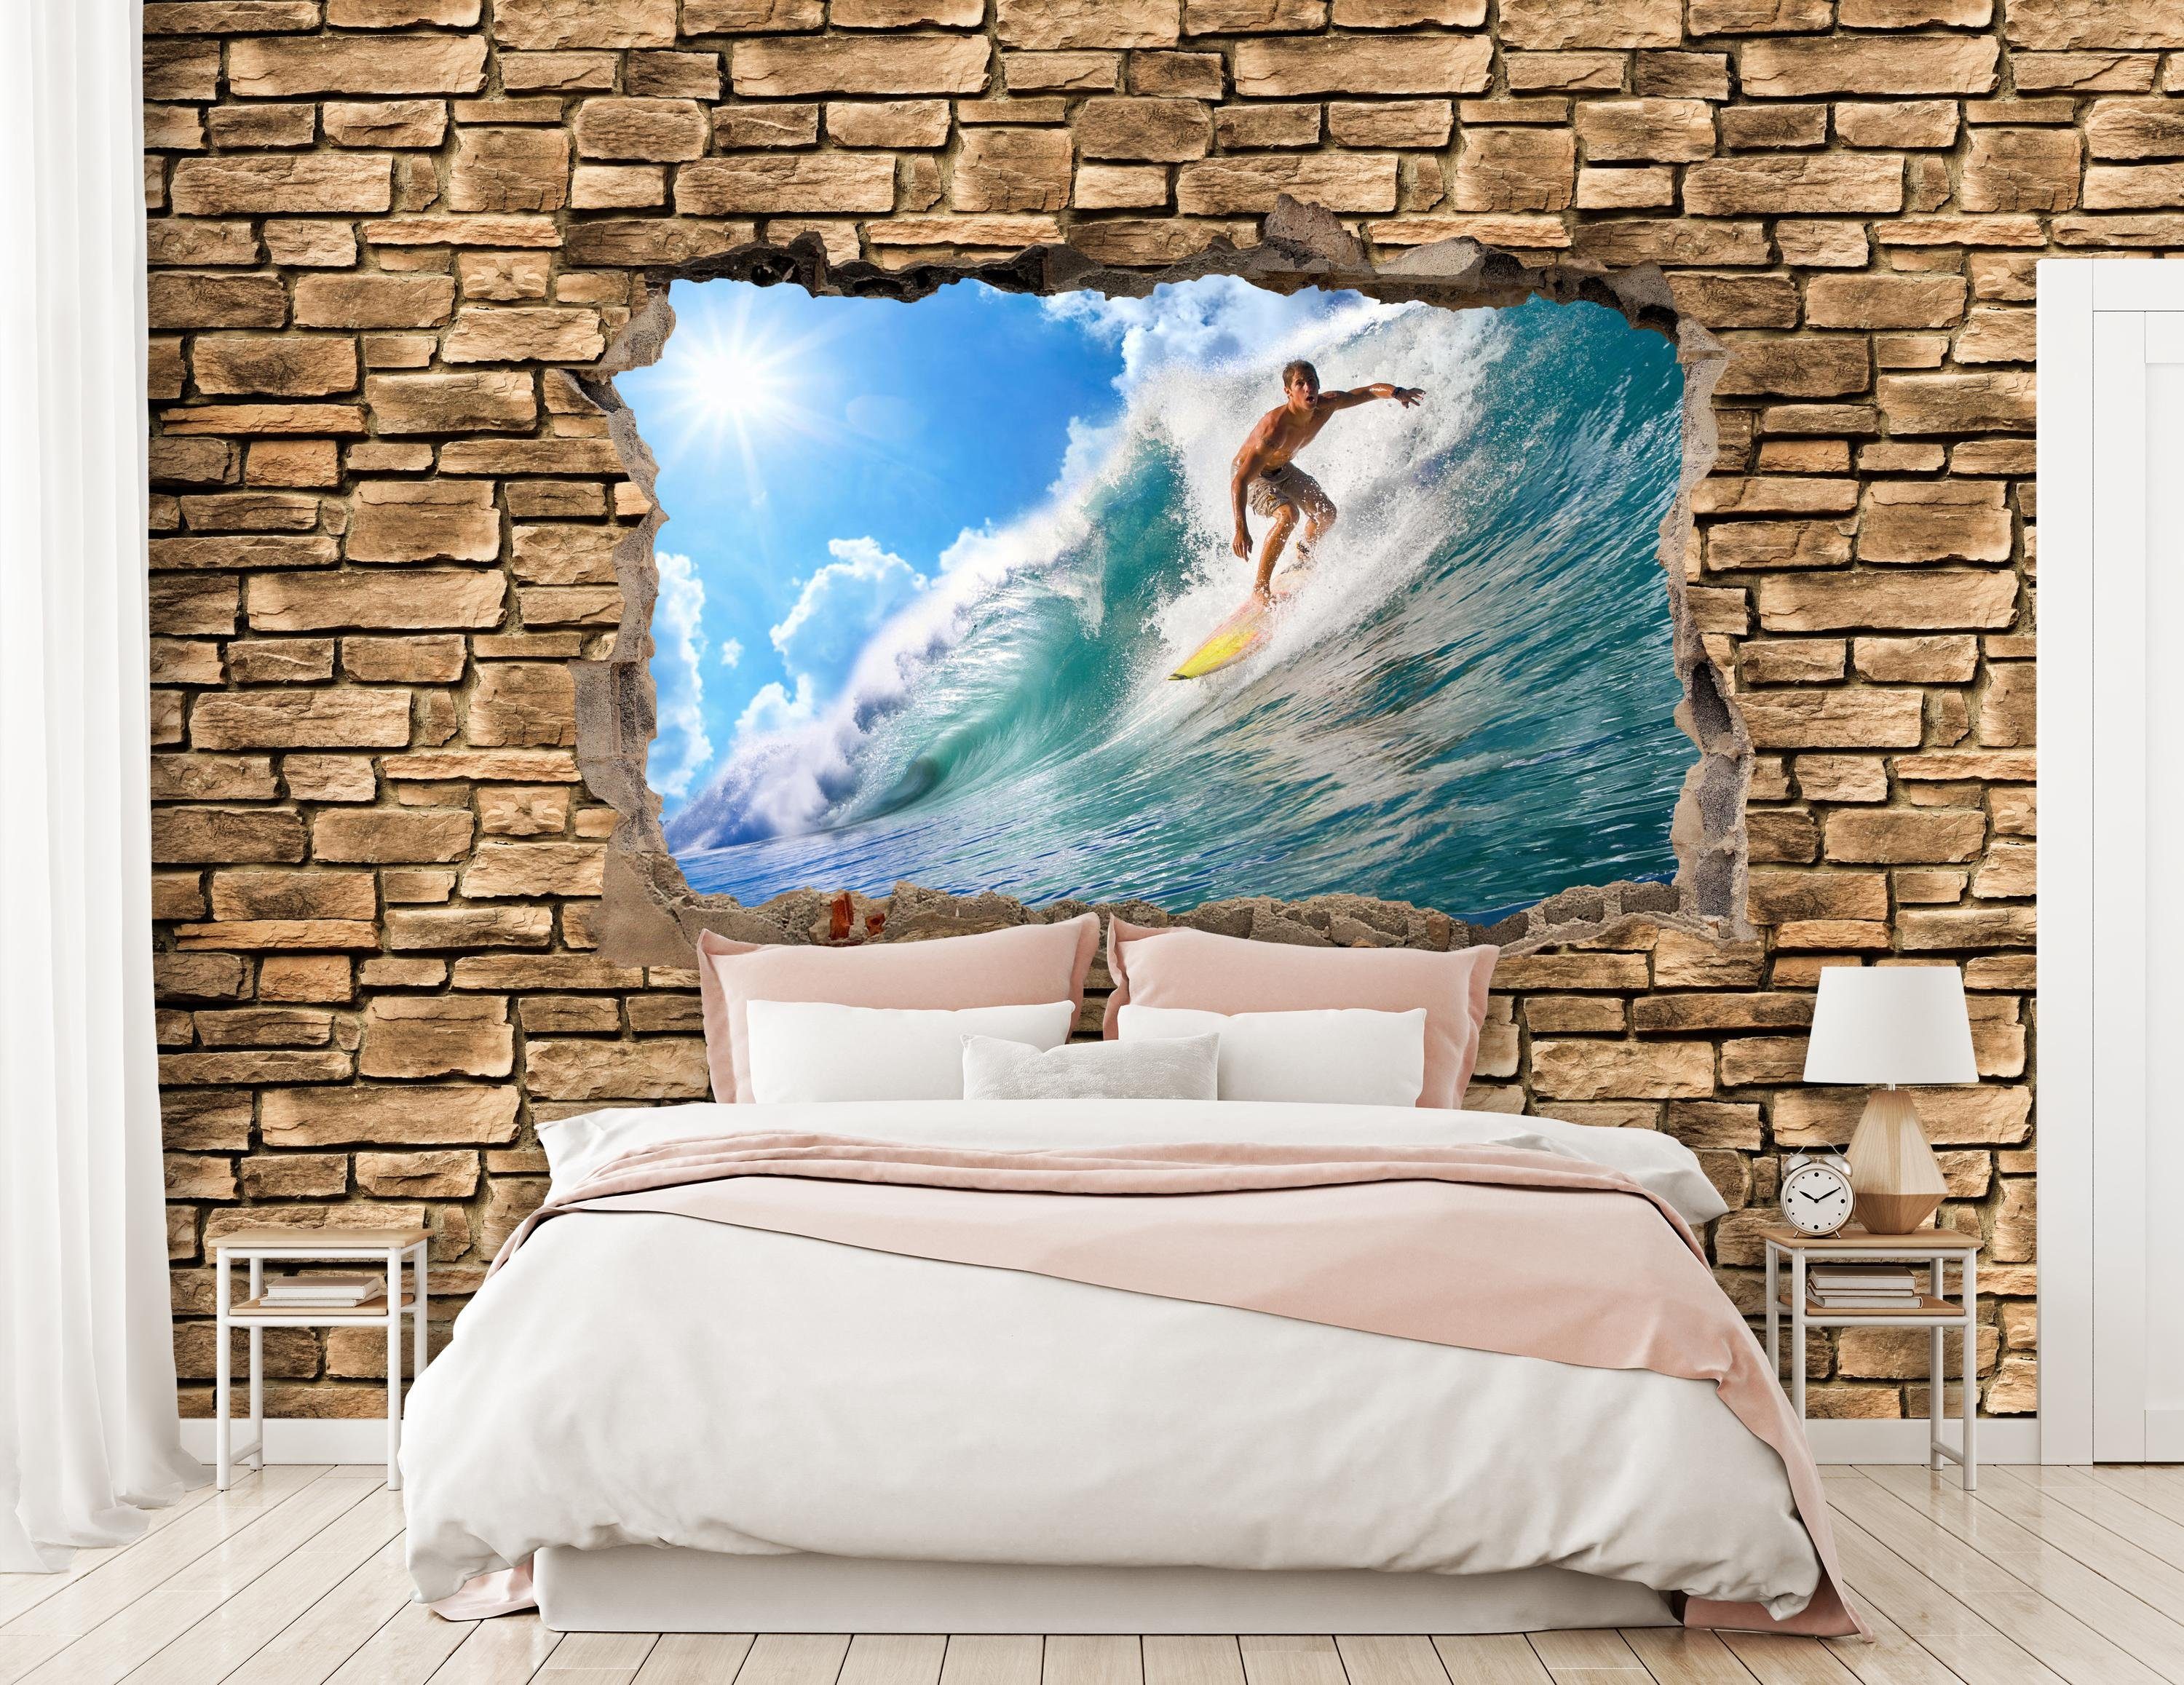 wandmotiv24 Fototapete 3D Surfing - Motivtapete, Wandtapete, Steinmauer, Vliestapete glatt, matt